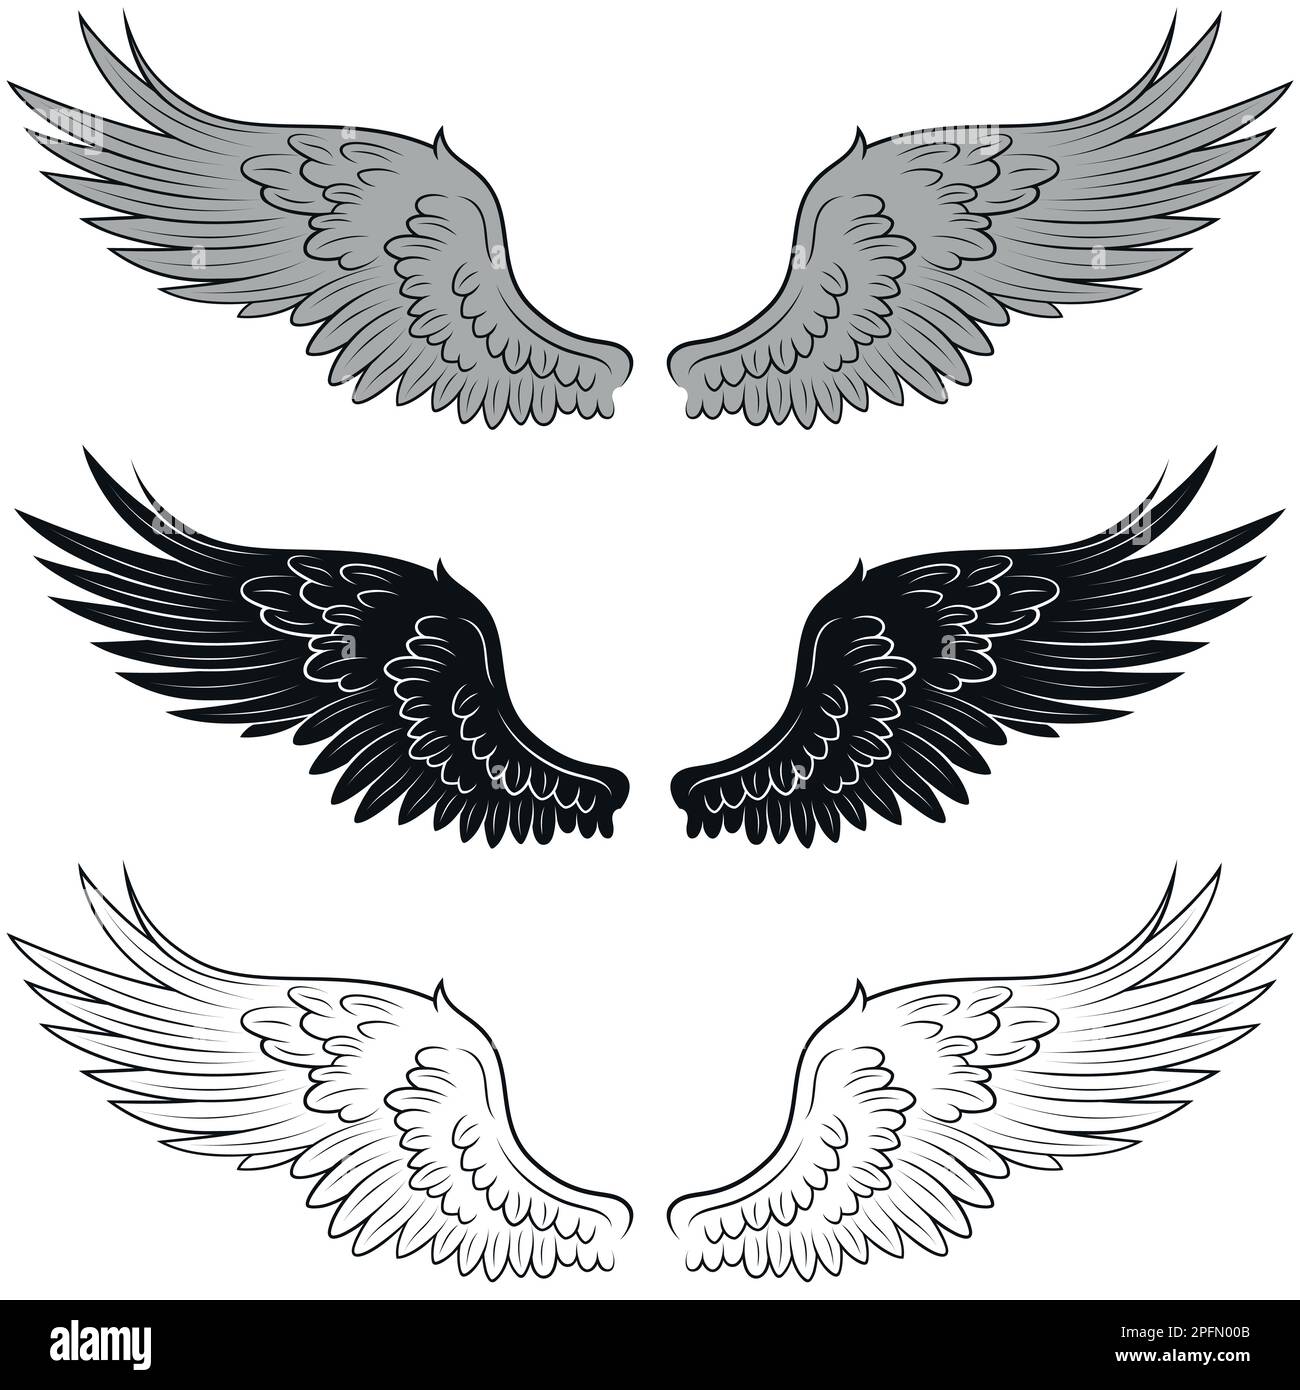 Disegno vettoriale di ali d'angelo, ali d'uccello per decorazione Illustrazione Vettoriale